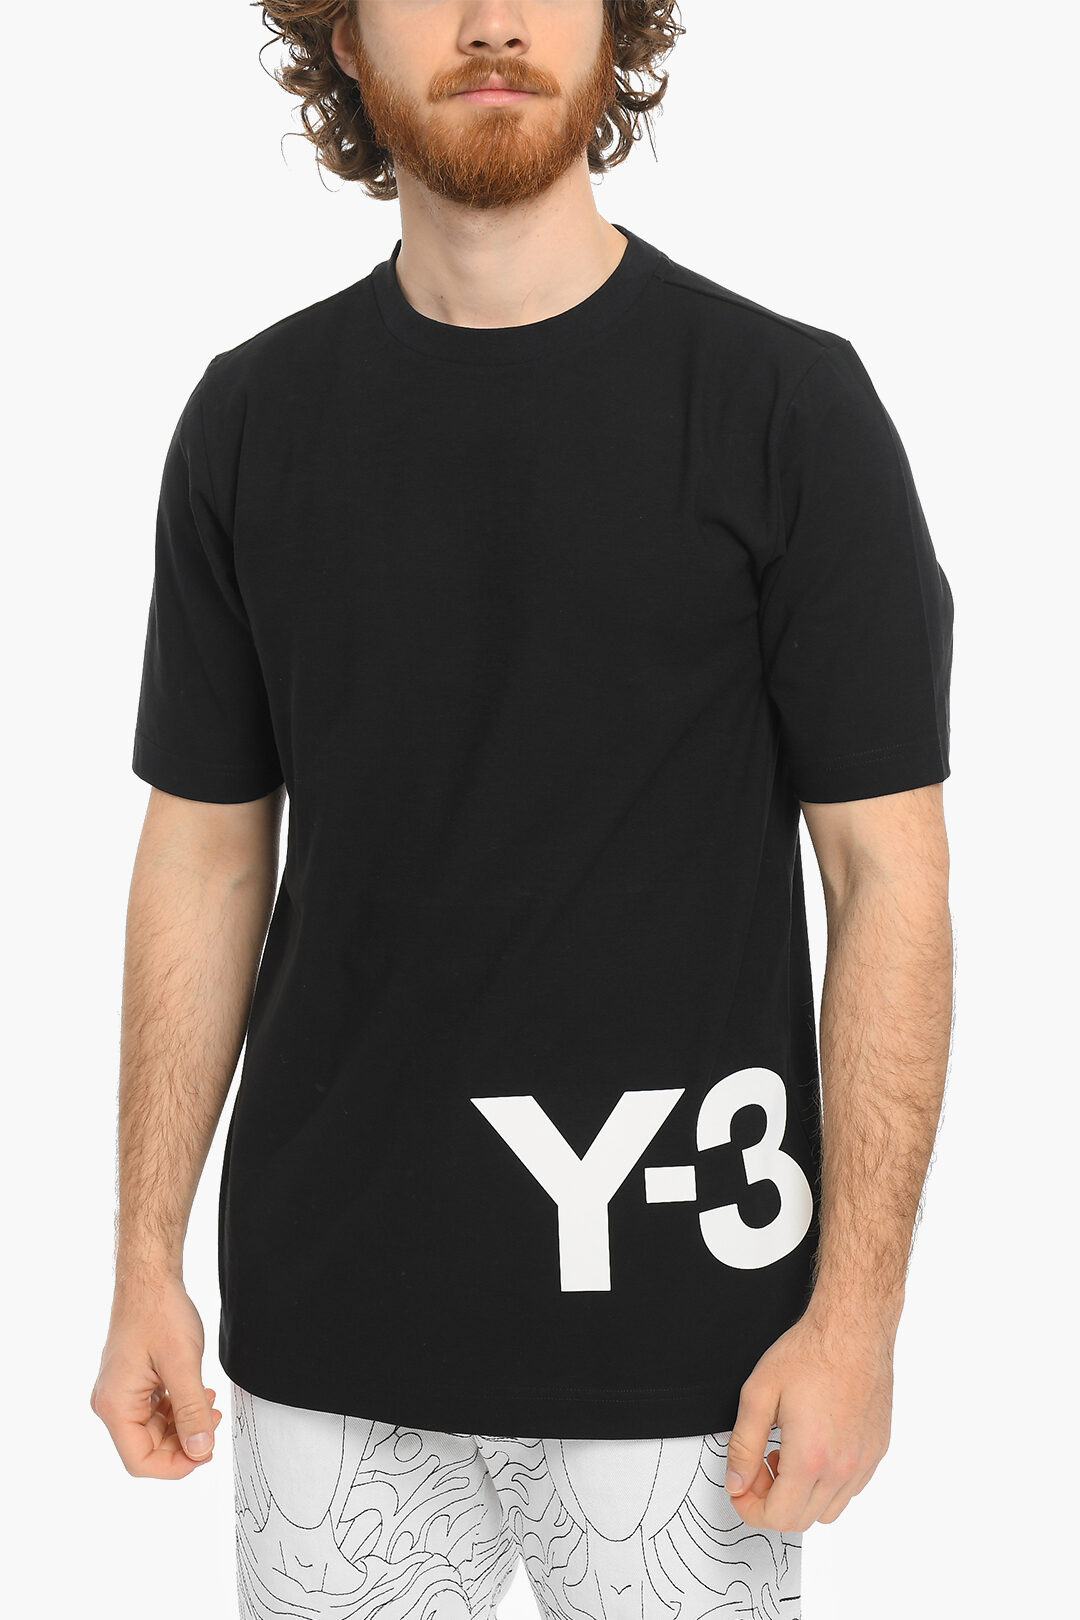 Y-3 半袖Tシャツ Y3 ヨウジヤマモト YOHJI YAMAMOTOトップス